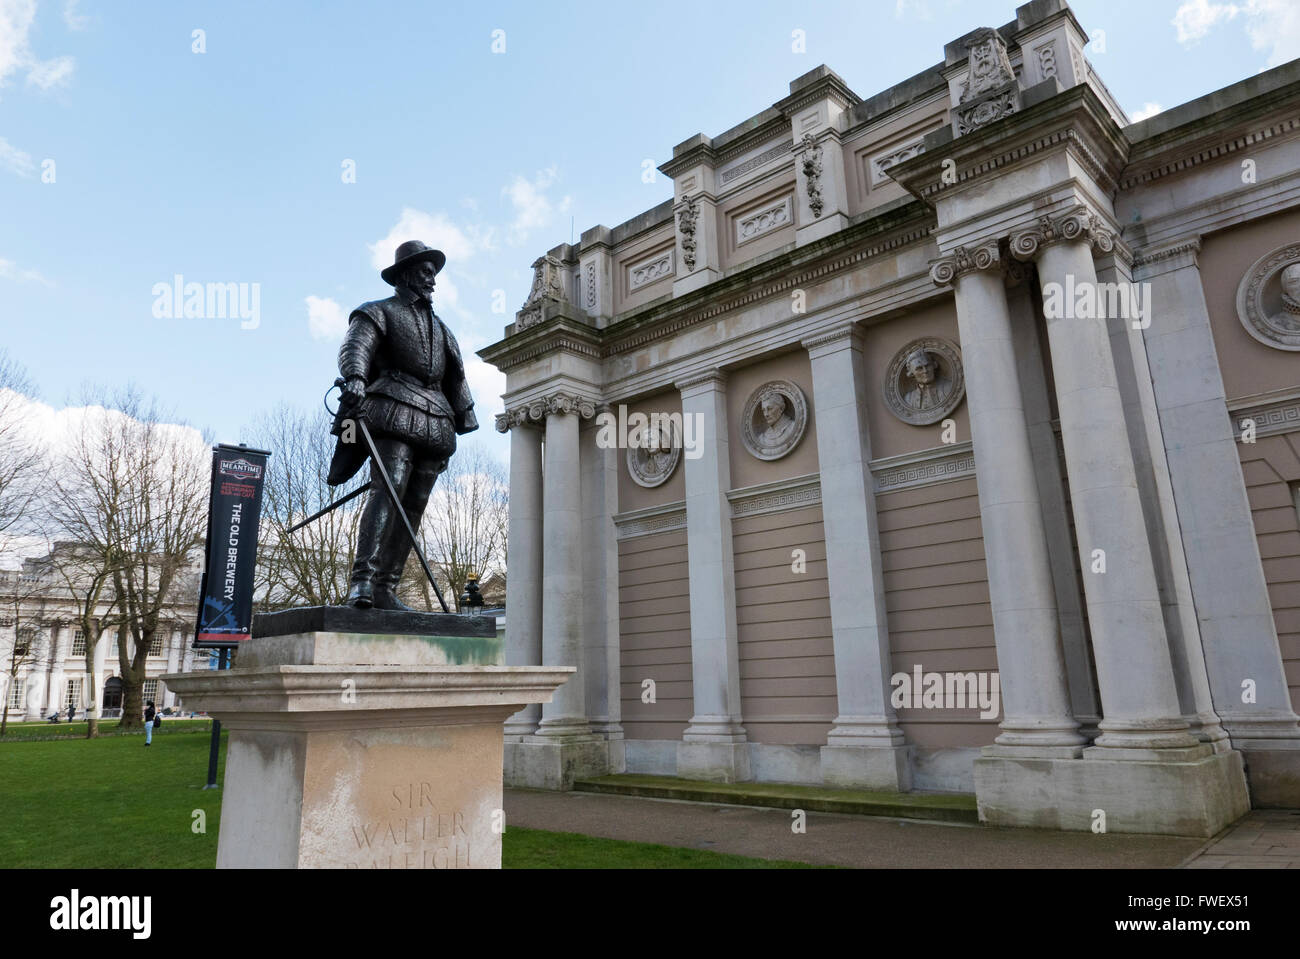 La statue de Sir Walter Raleigh statue à l'extérieur du bâtiment de découvrir Greenwich, Londres, Royaume-Uni. Banque D'Images